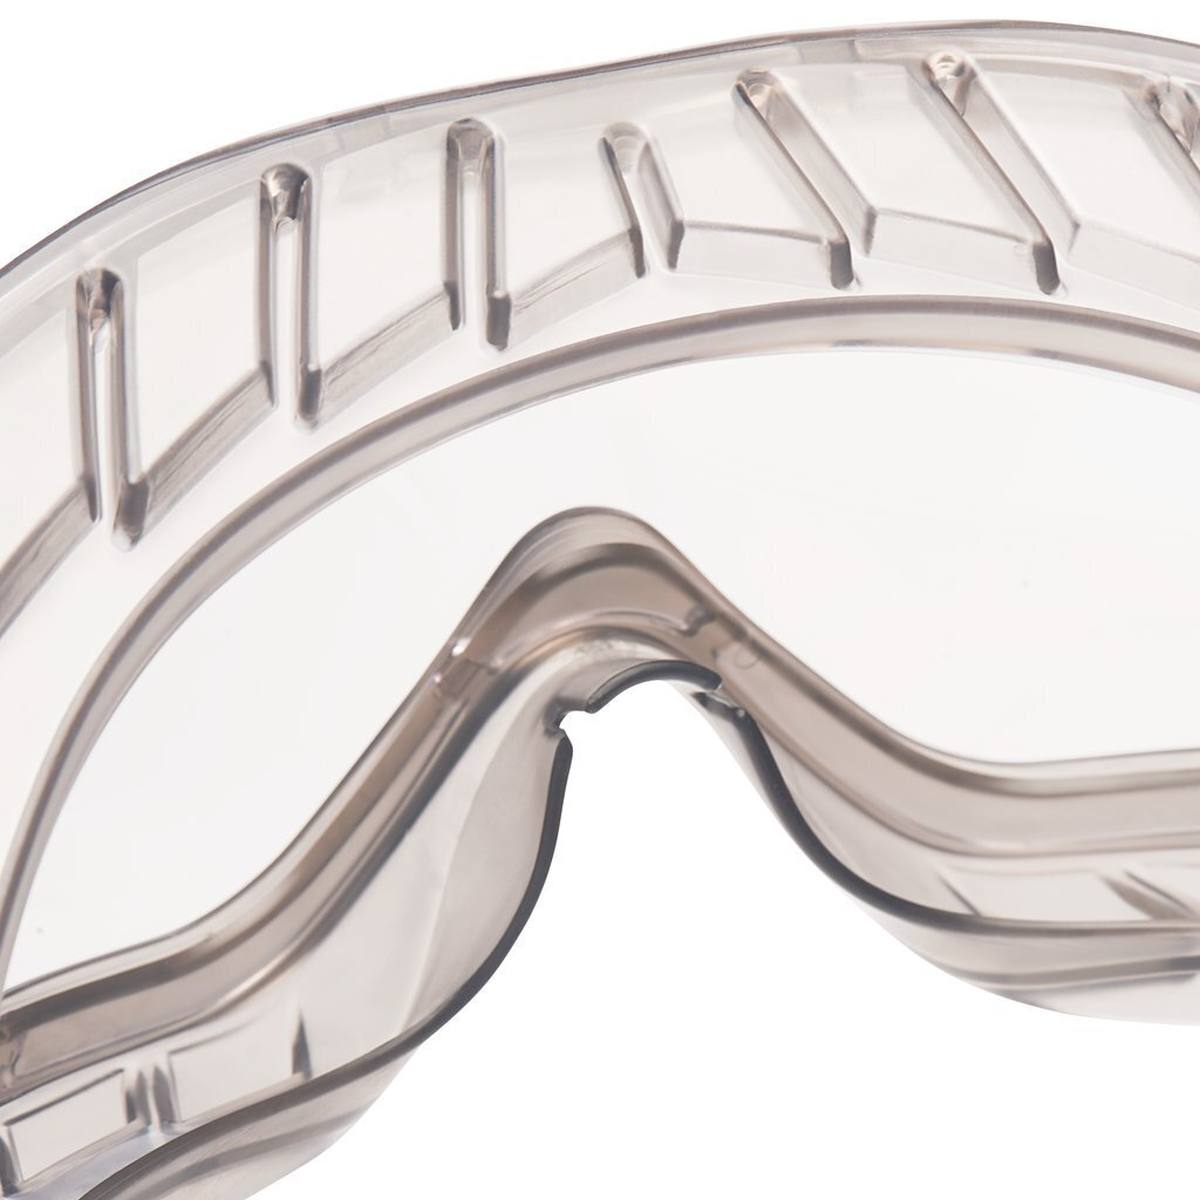 3M 2890S Gafas de visión total AS/AF/UV, PC, sin ranuras de ventilación (estancas al gas), bisagras ajustables